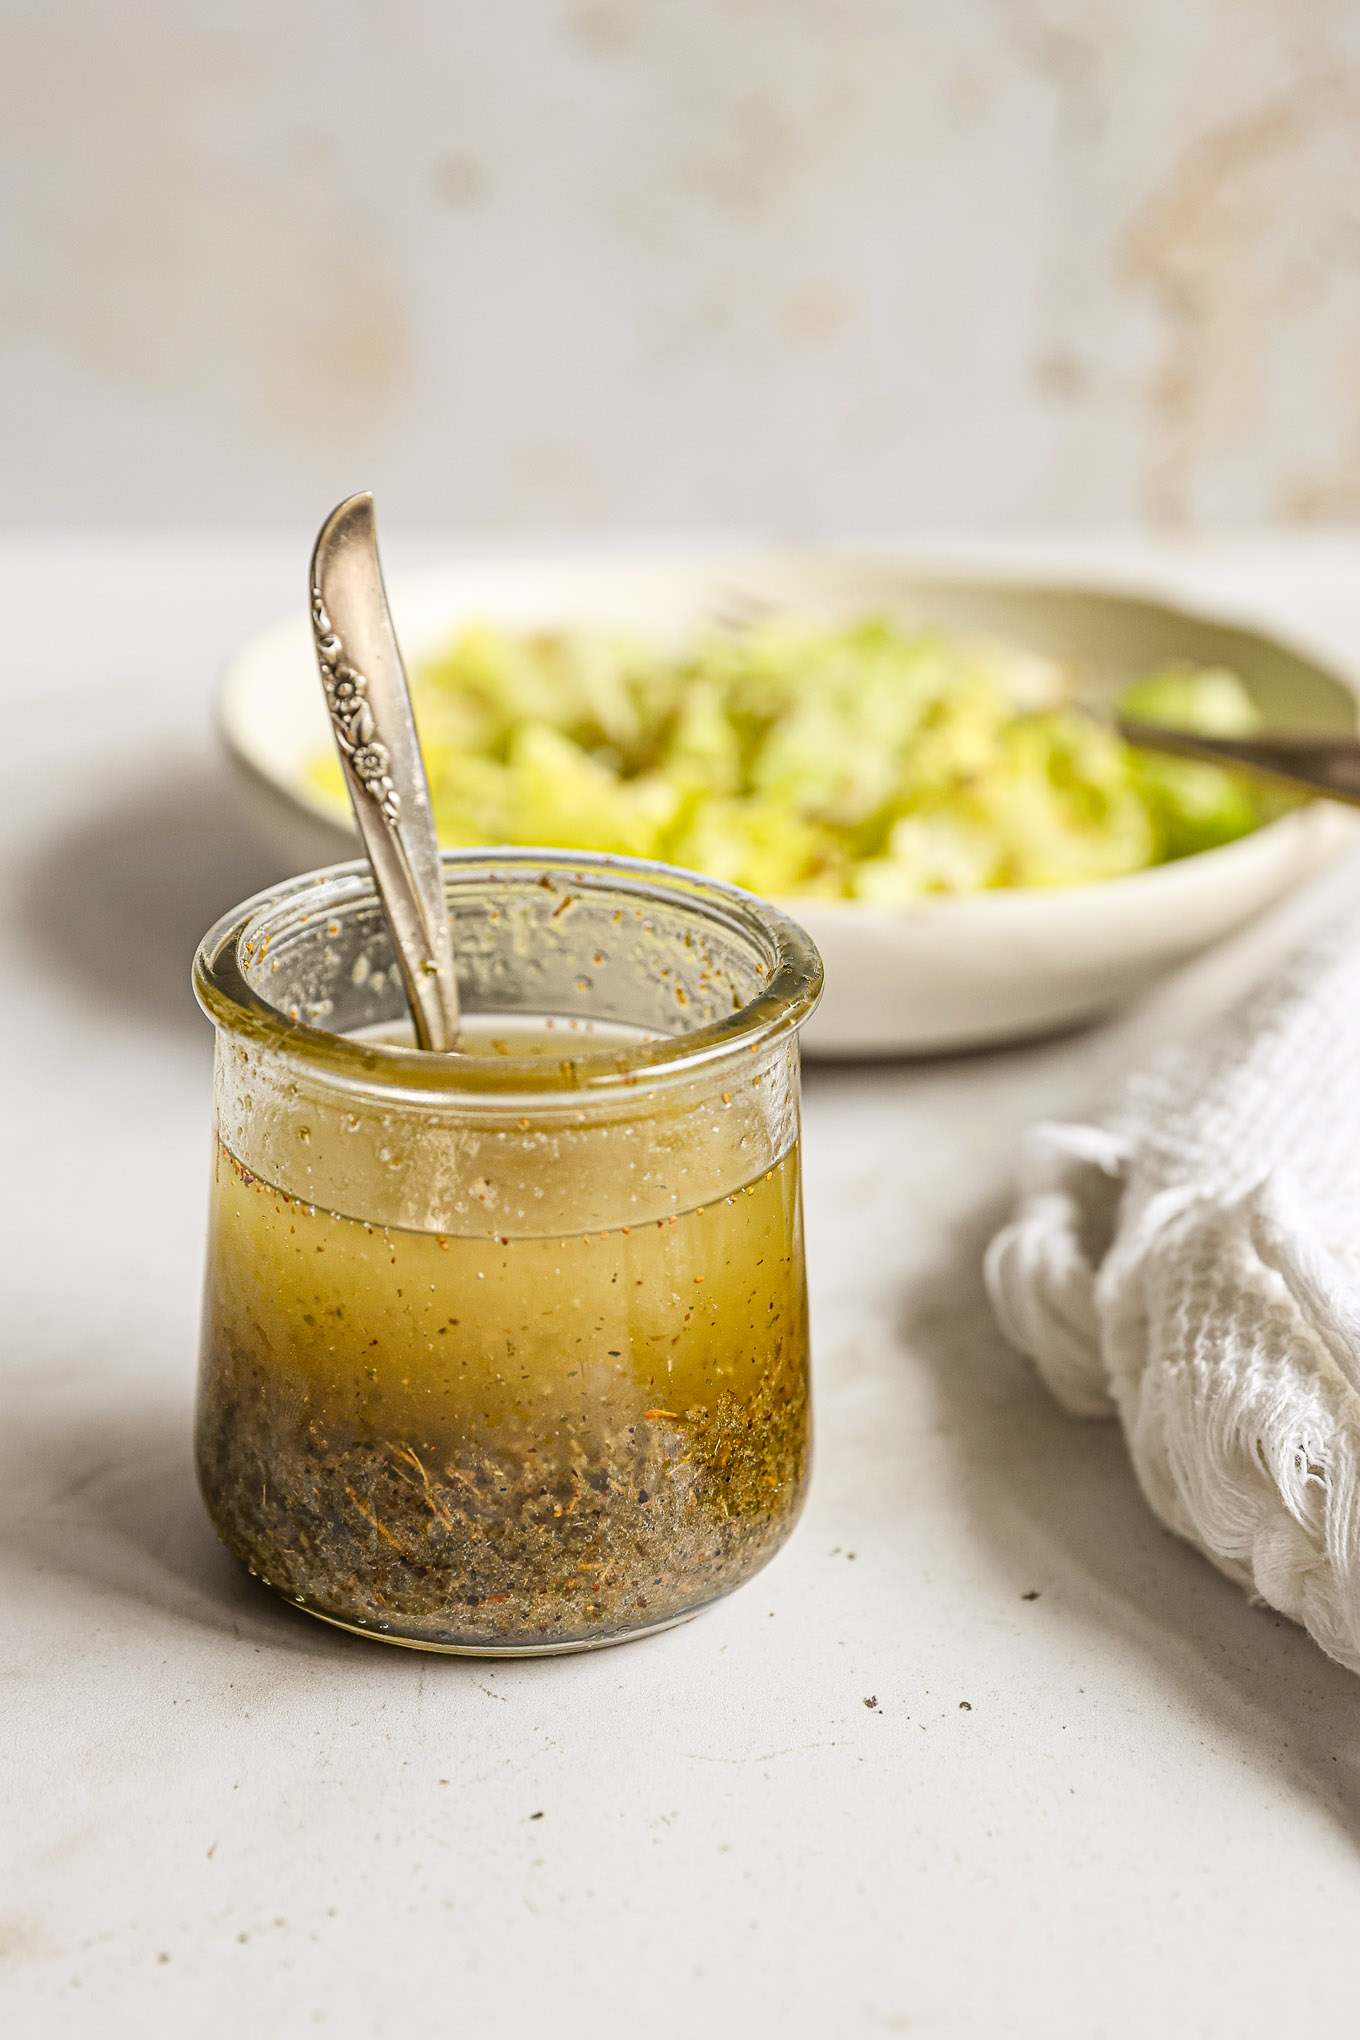 zesty italian dressing in a glass jar.